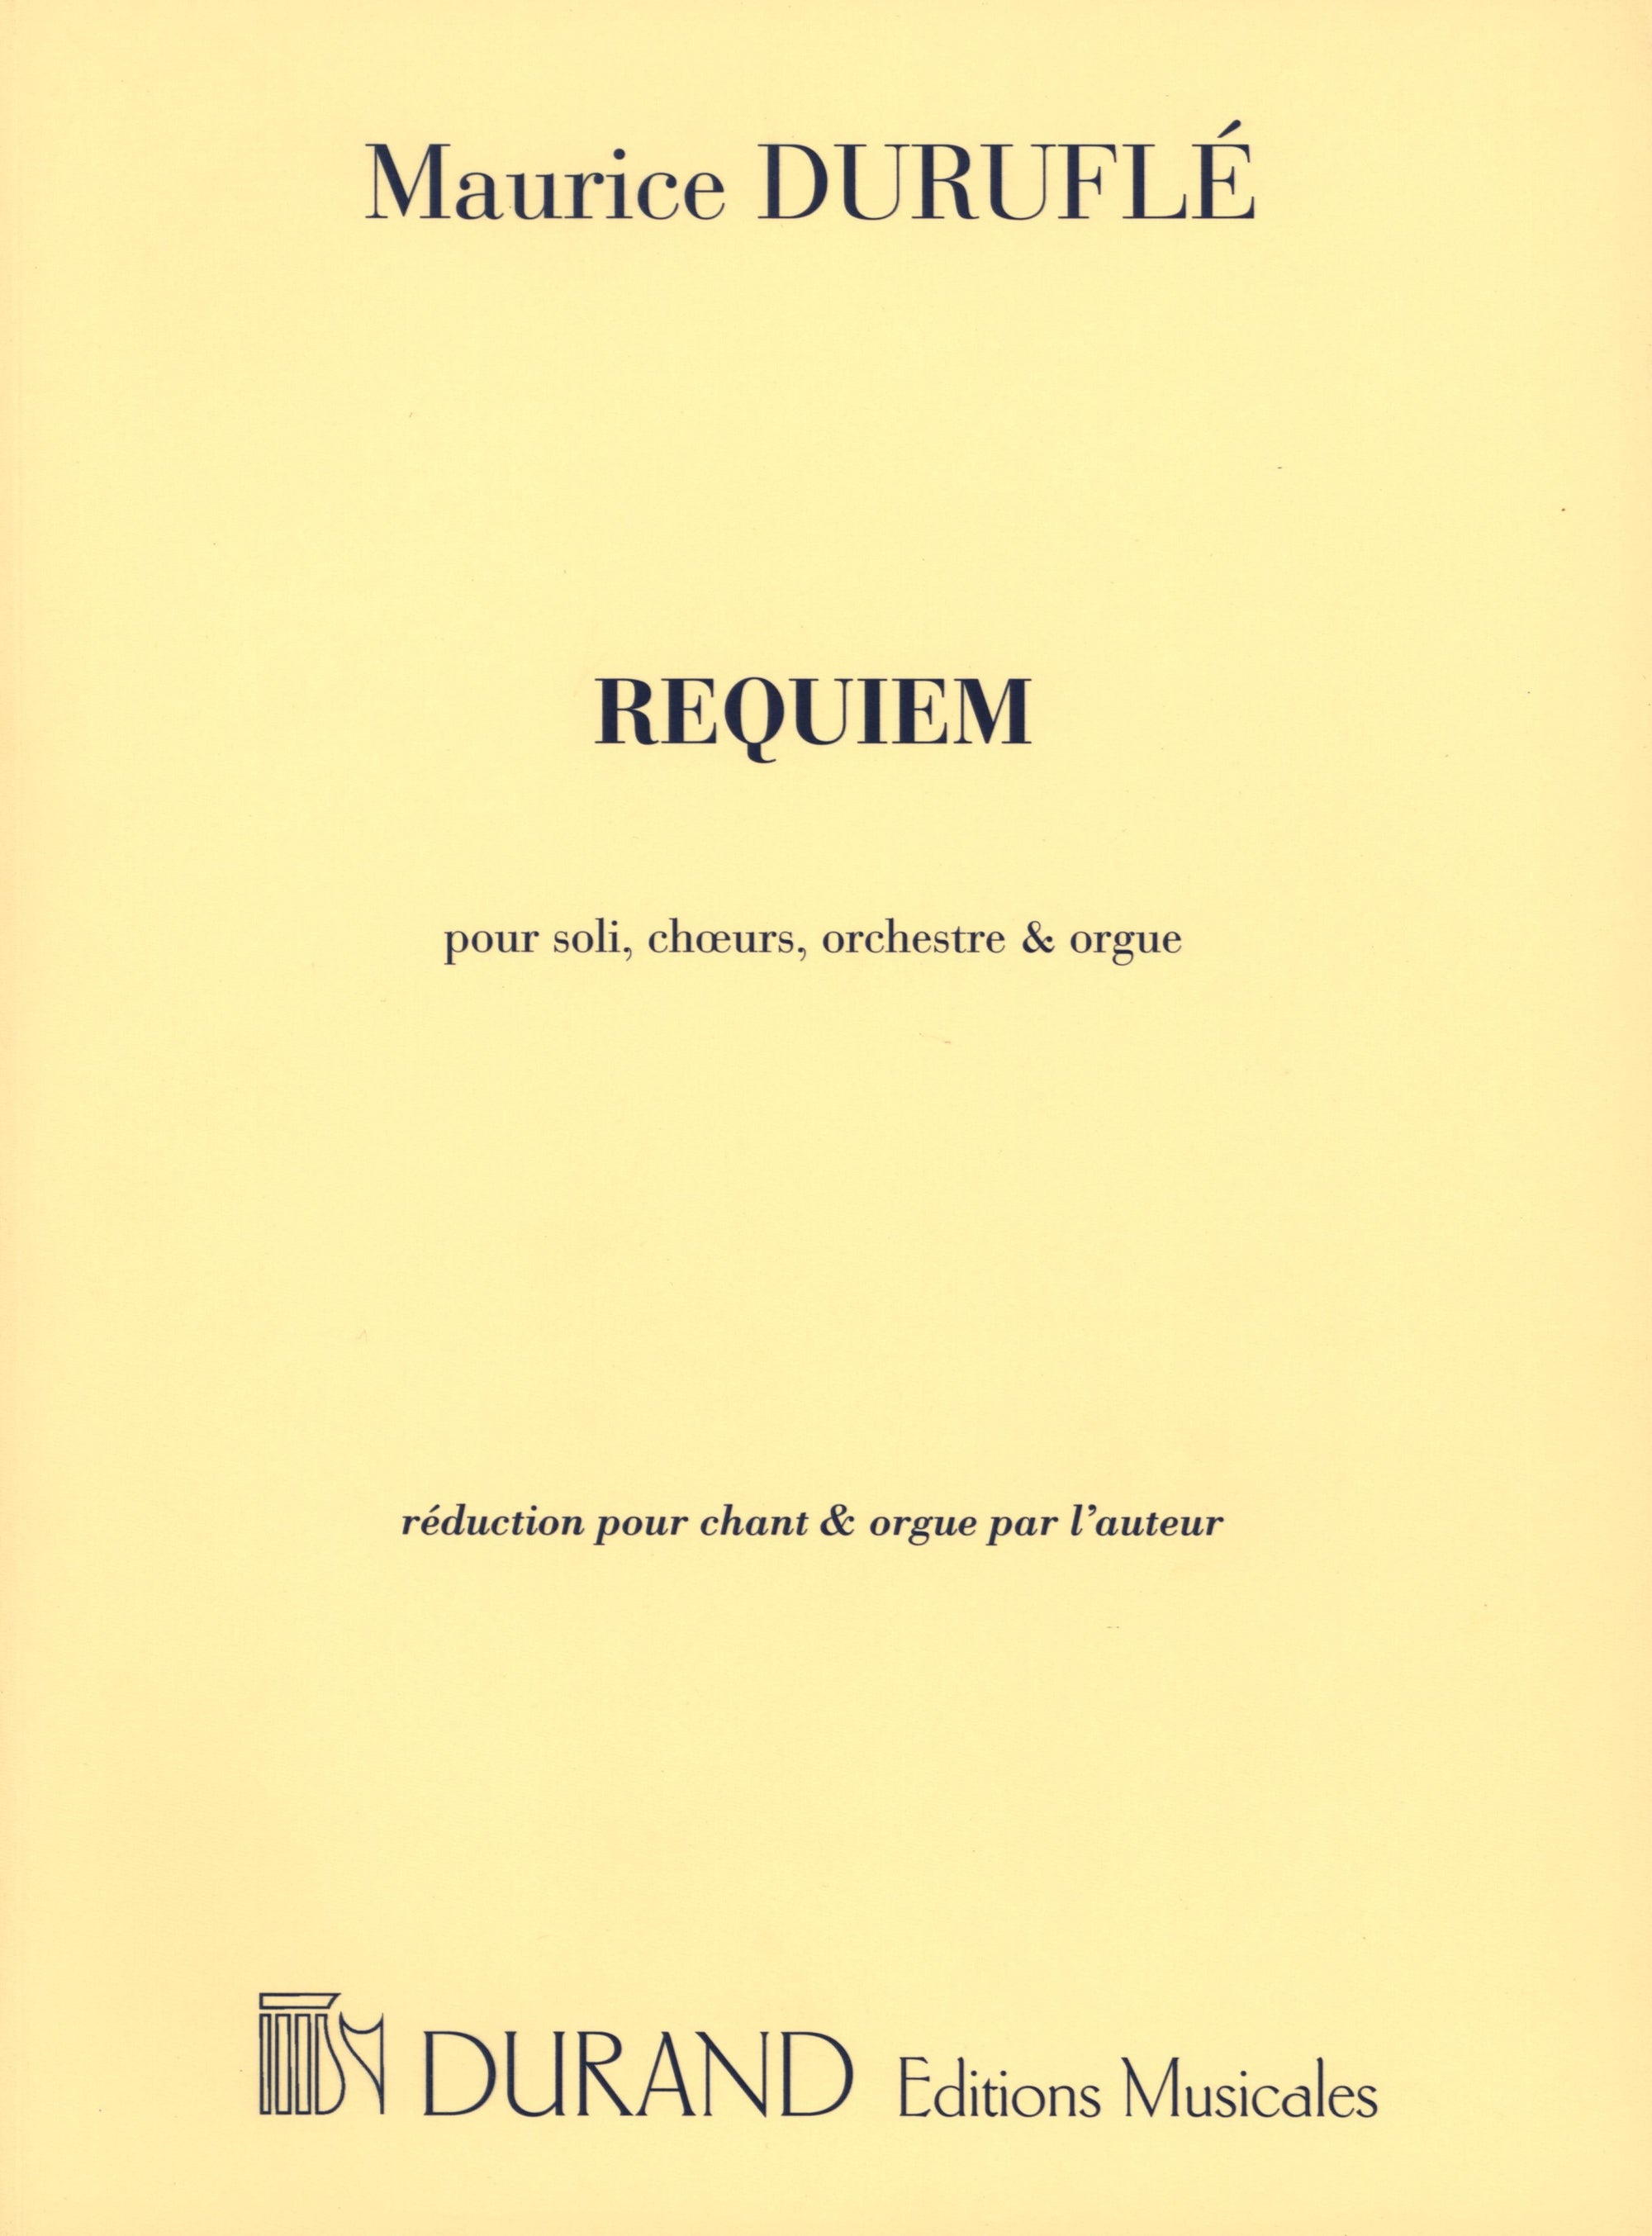 Duruflé: Requiem, Op. 9